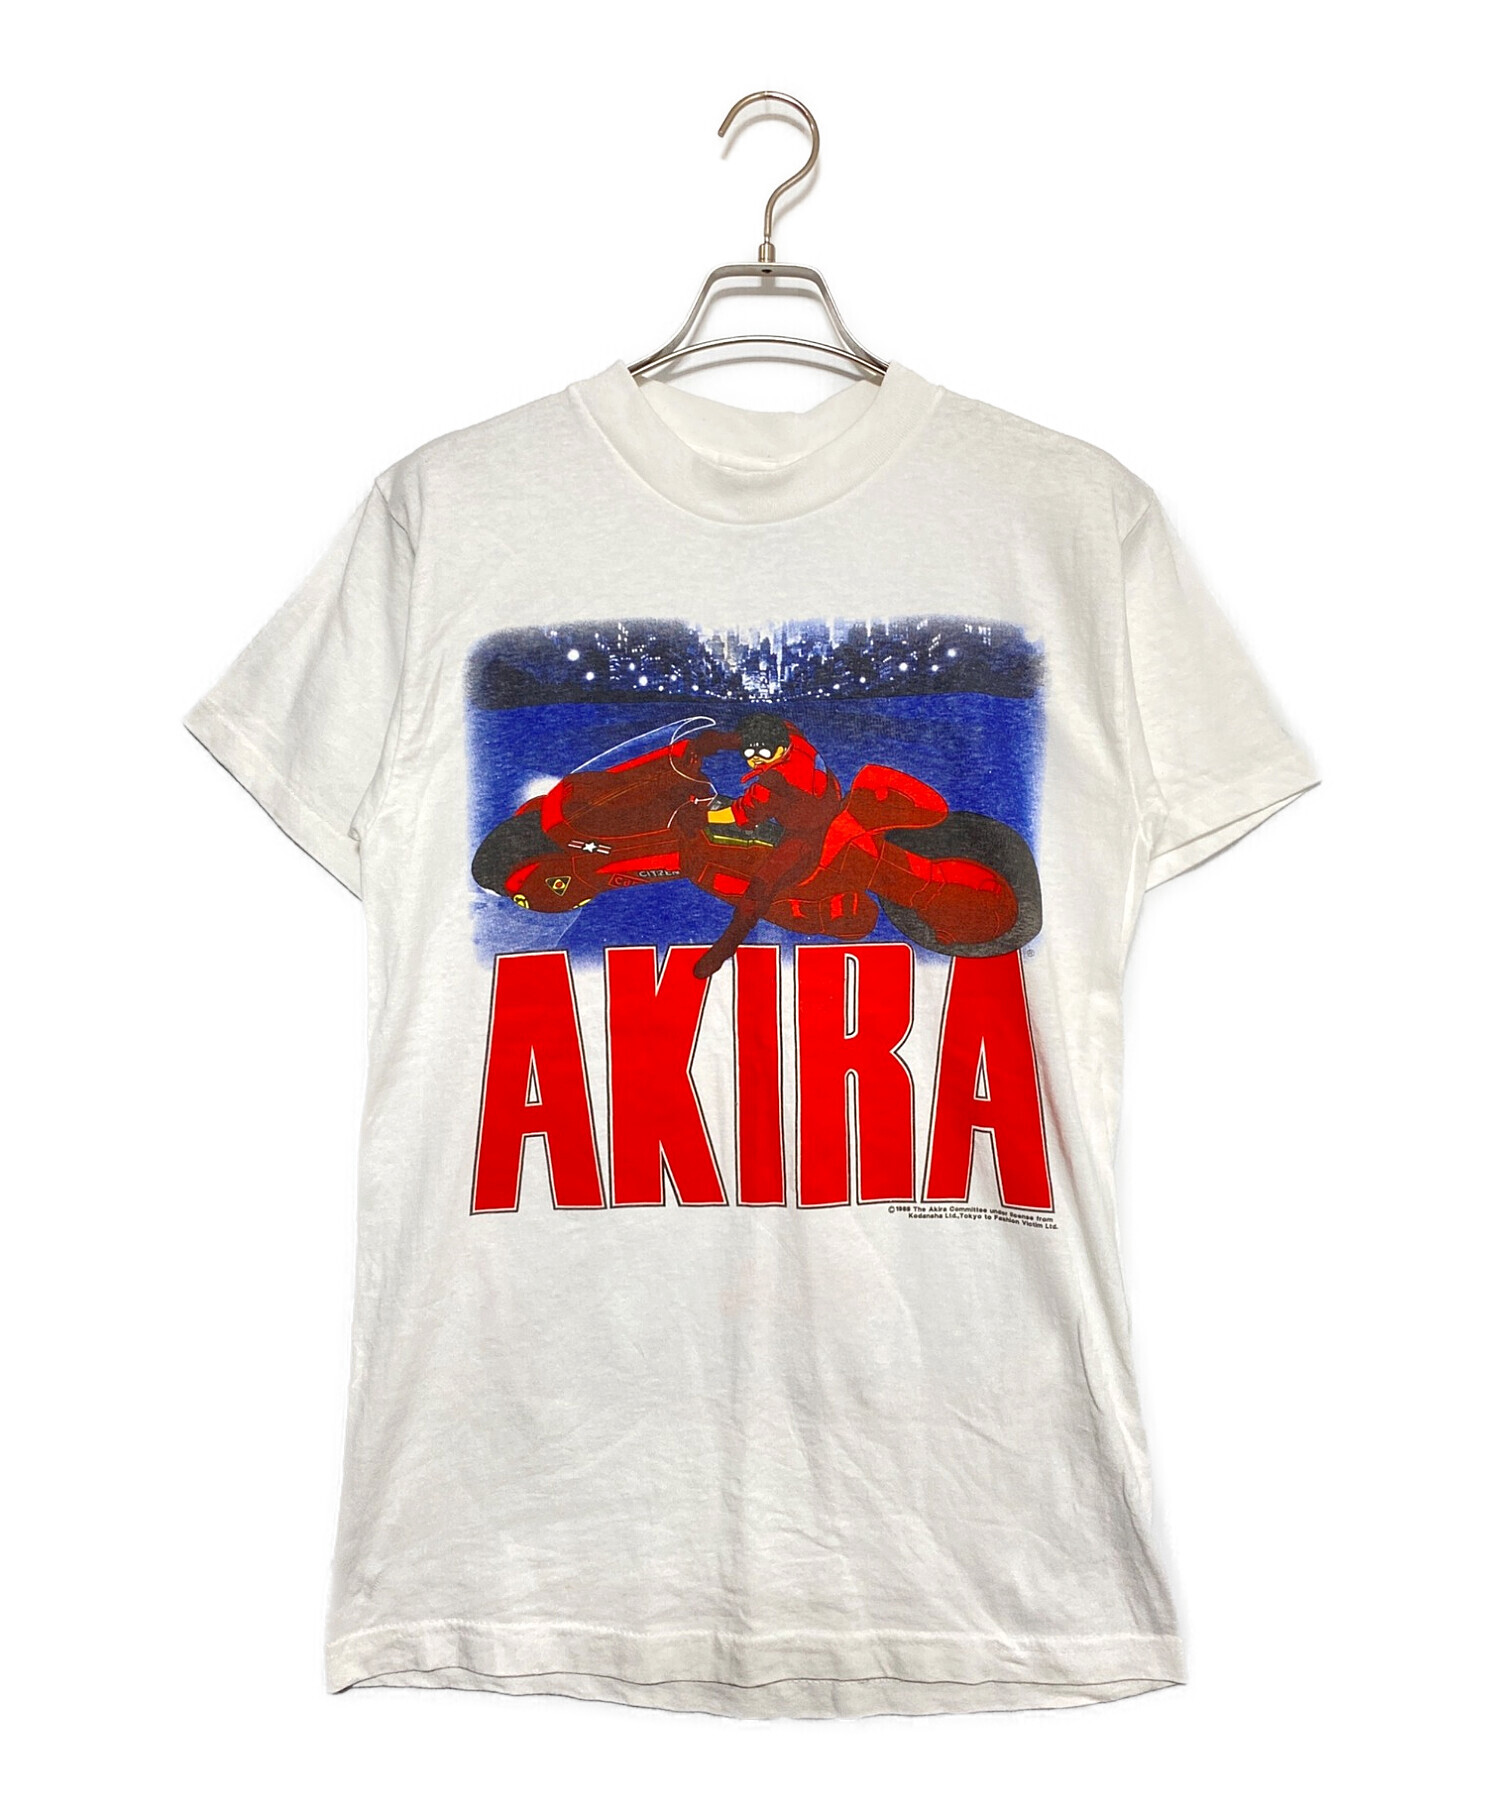 Tシャツ/カットソー(半袖/袖なし)AKIRA アキラ tシャツ - www.comicsxf.com